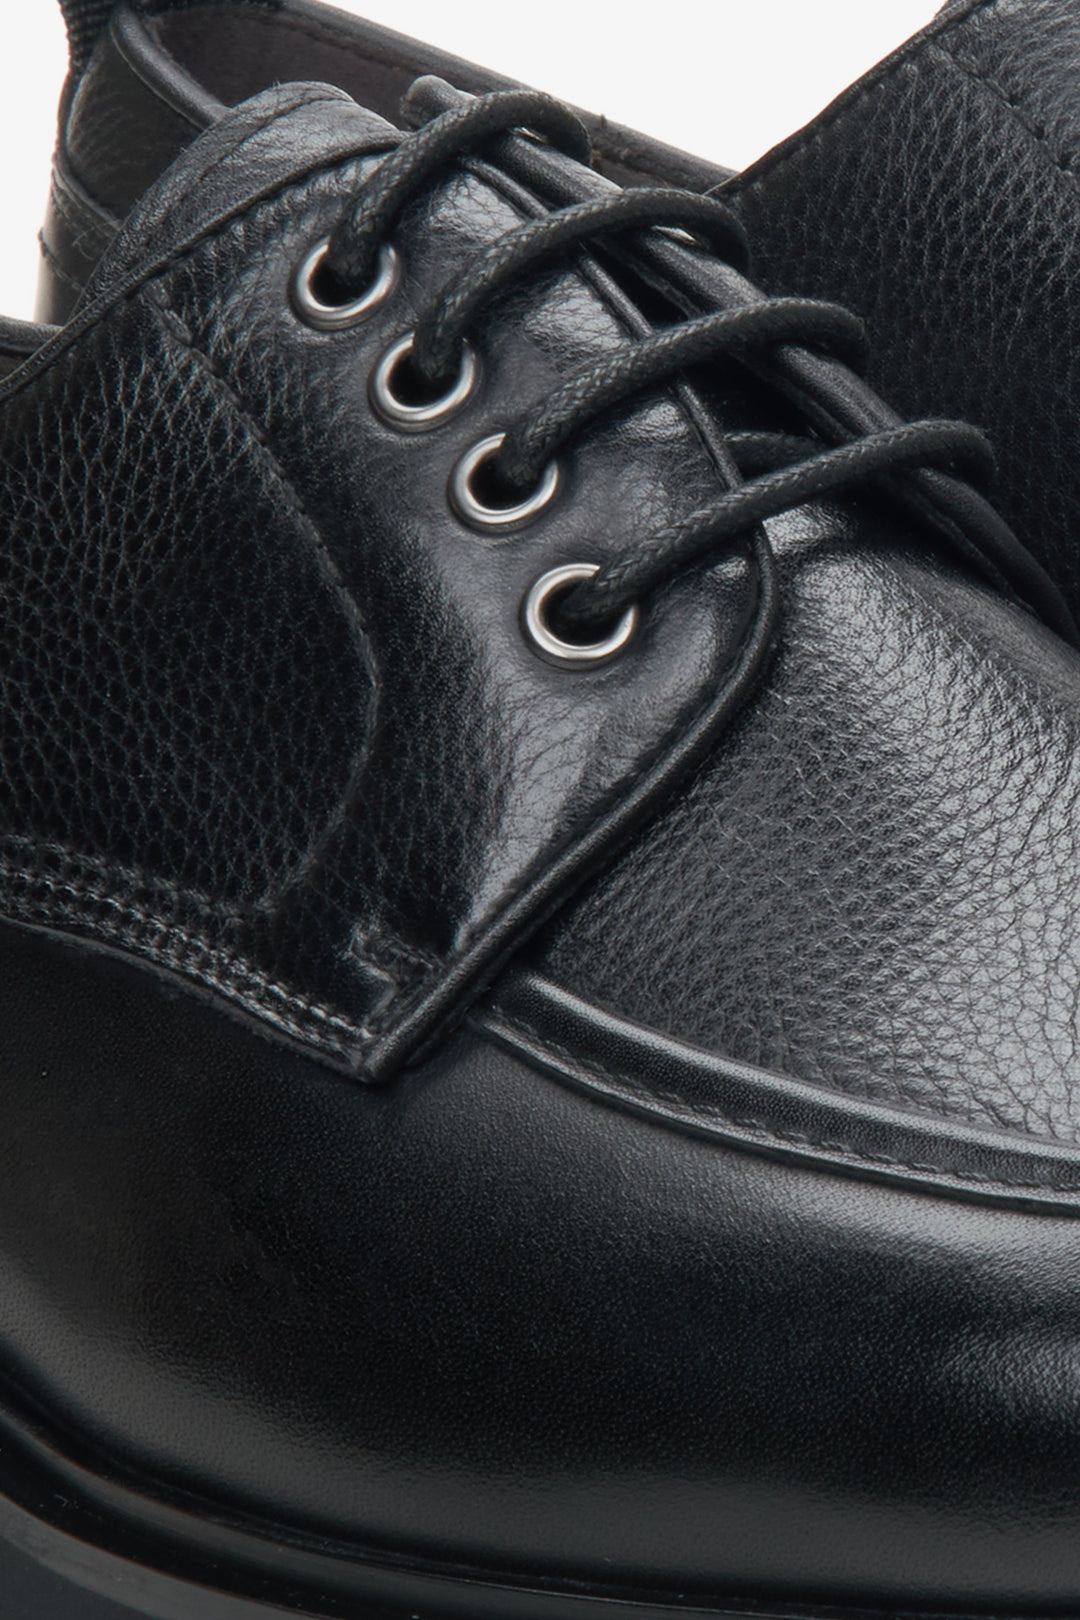 Estro black men's leather brogues - close-up on details.